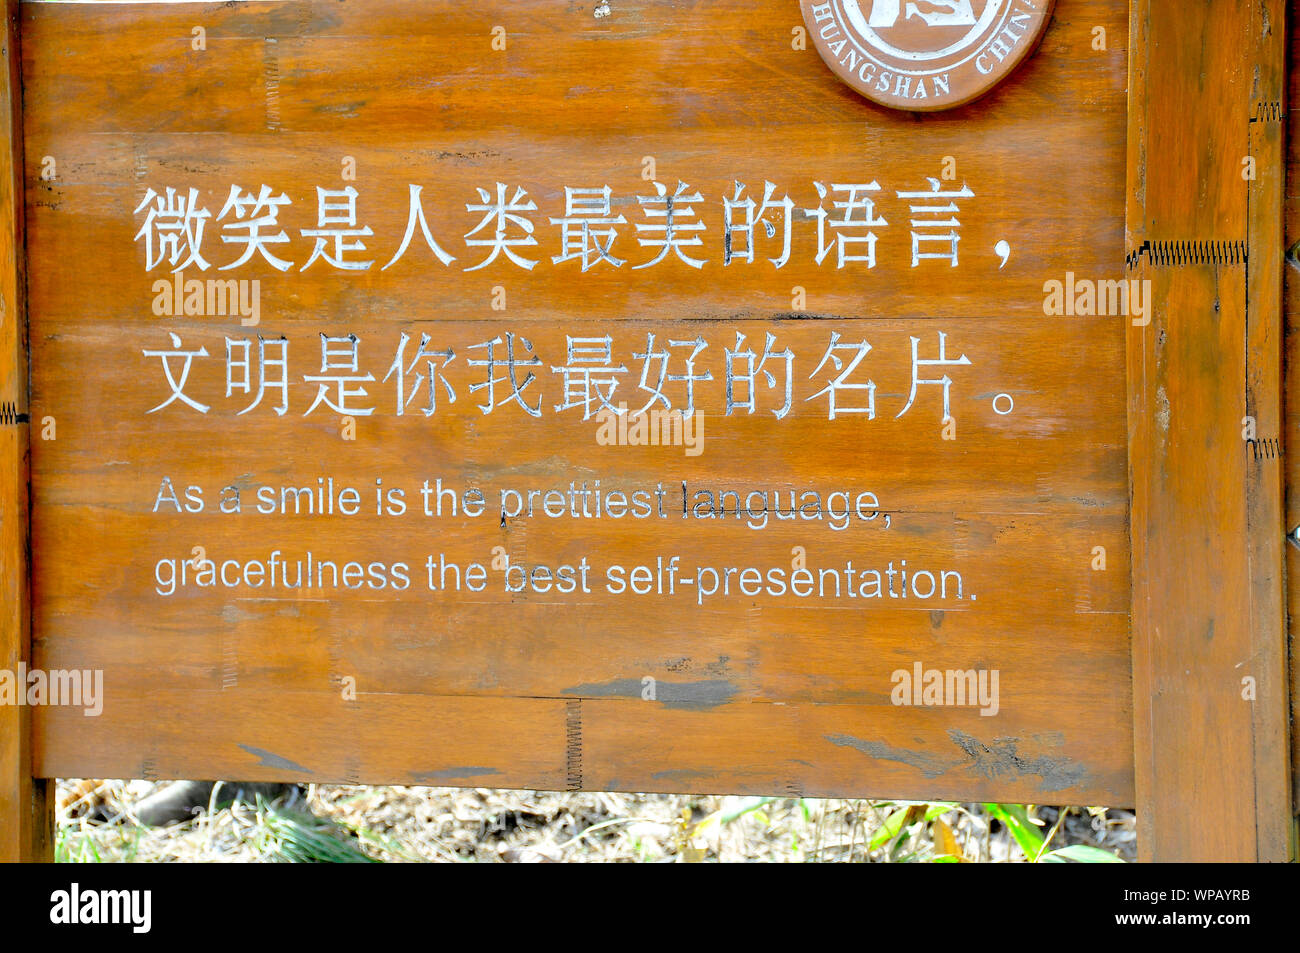 Amüsante Übersetzung auf chinesische Zeichen in Huang Shan National Park Stockfoto